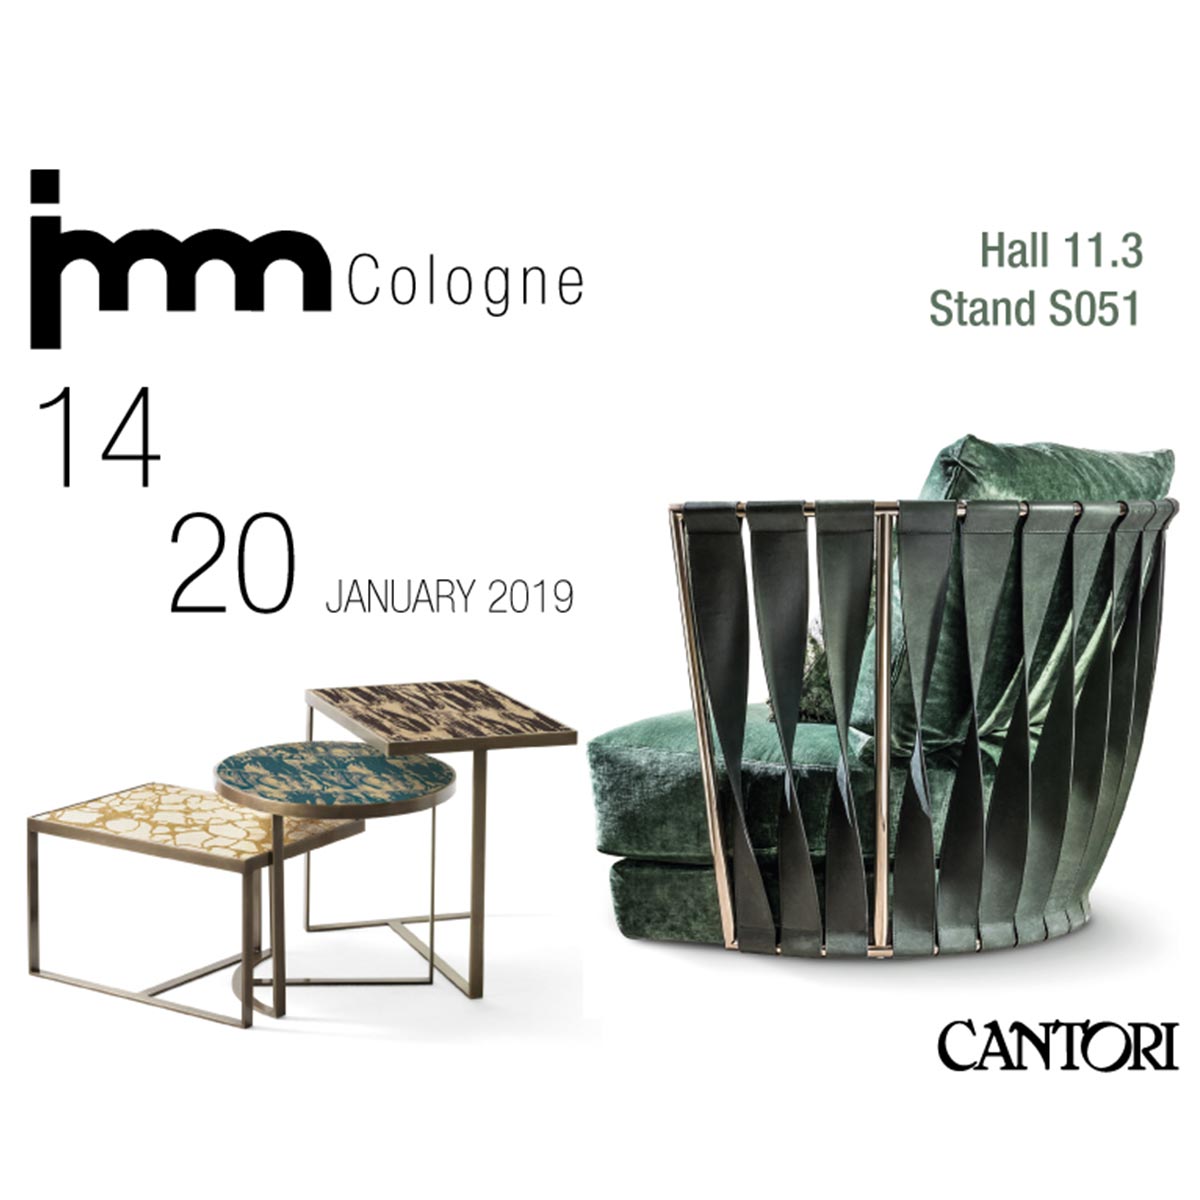 11/12/2018 Cantori al Imm Cologne 2019 - Cantori